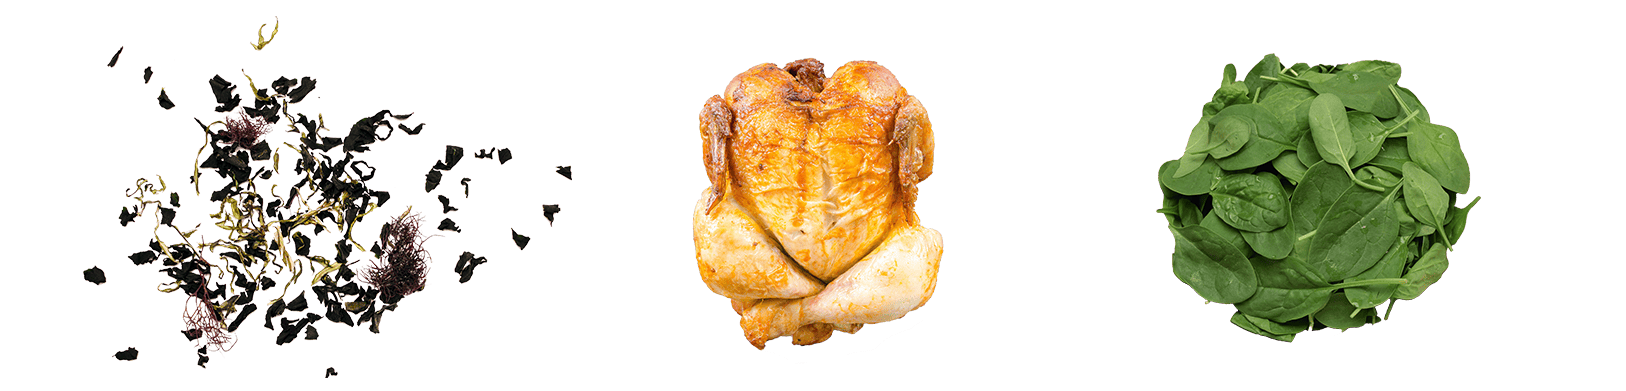 chicken deli second ingredients maet | MÆT